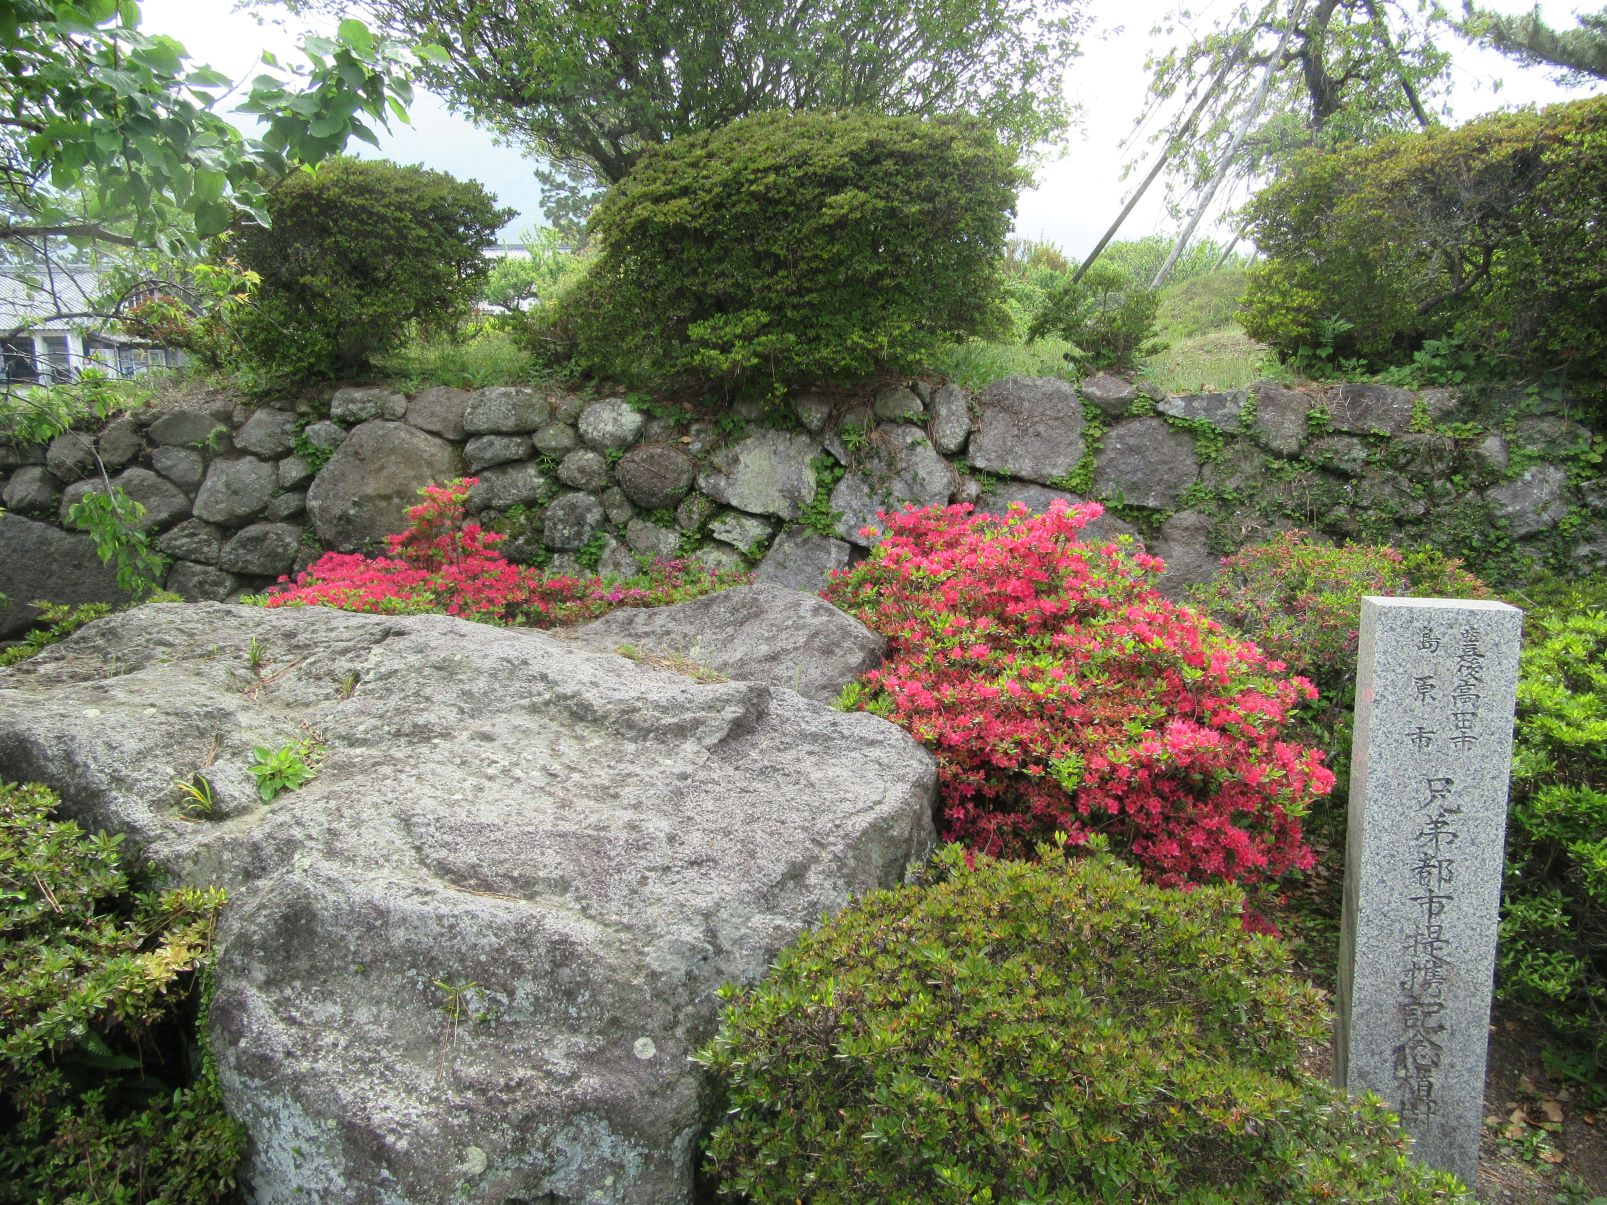 長崎県島原市の島原城で撮影した、昭和の町で有名な大分県豊後高田市との兄弟都市提携記念植樹だそうです。